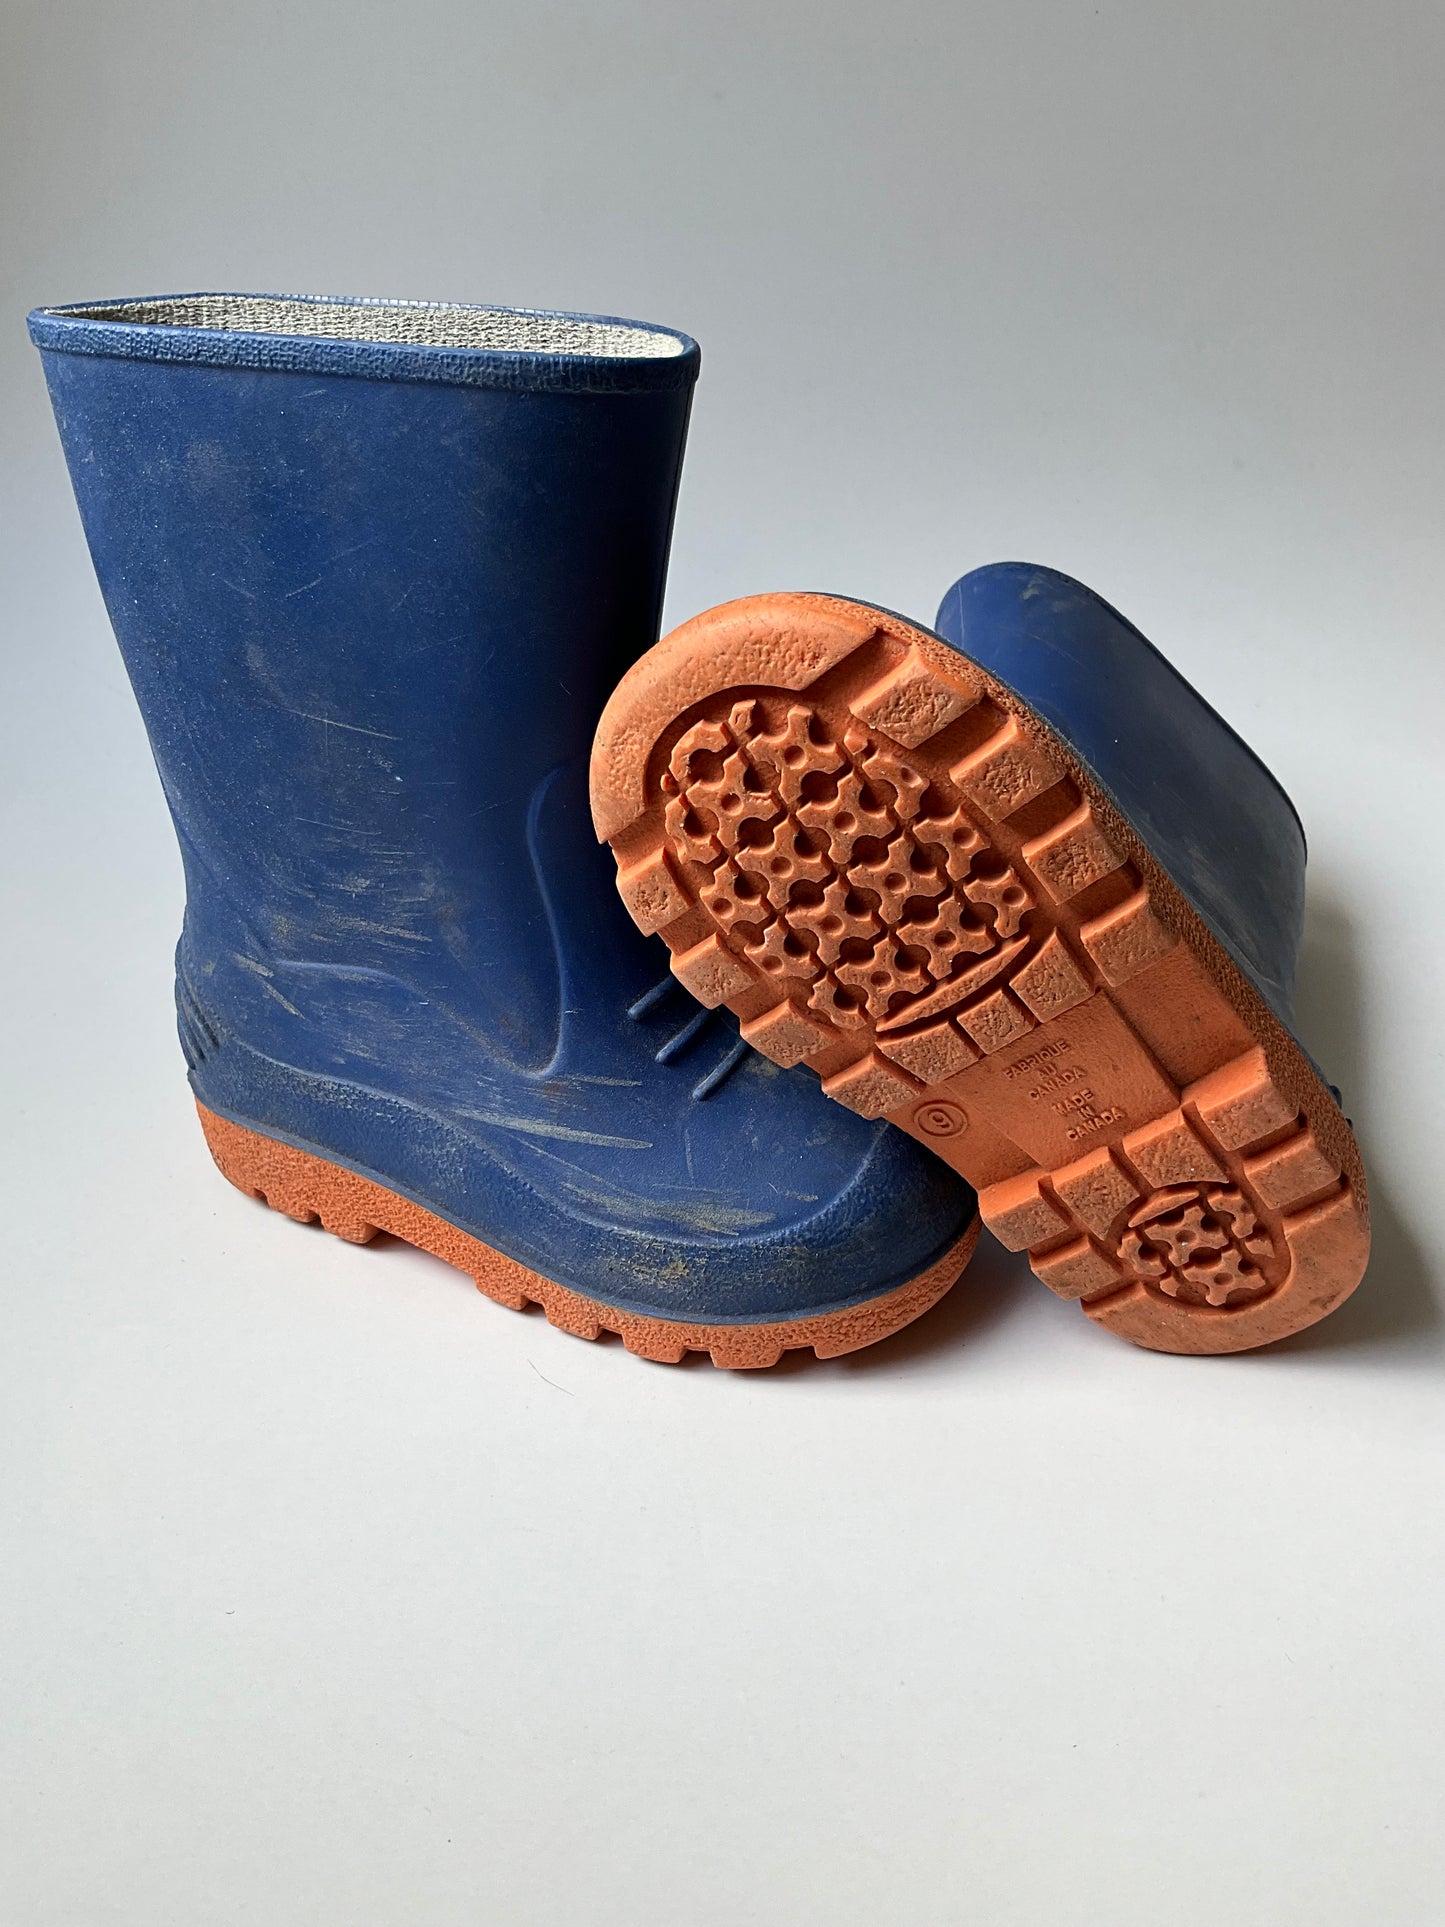 Blue & Orange Rubber Boots